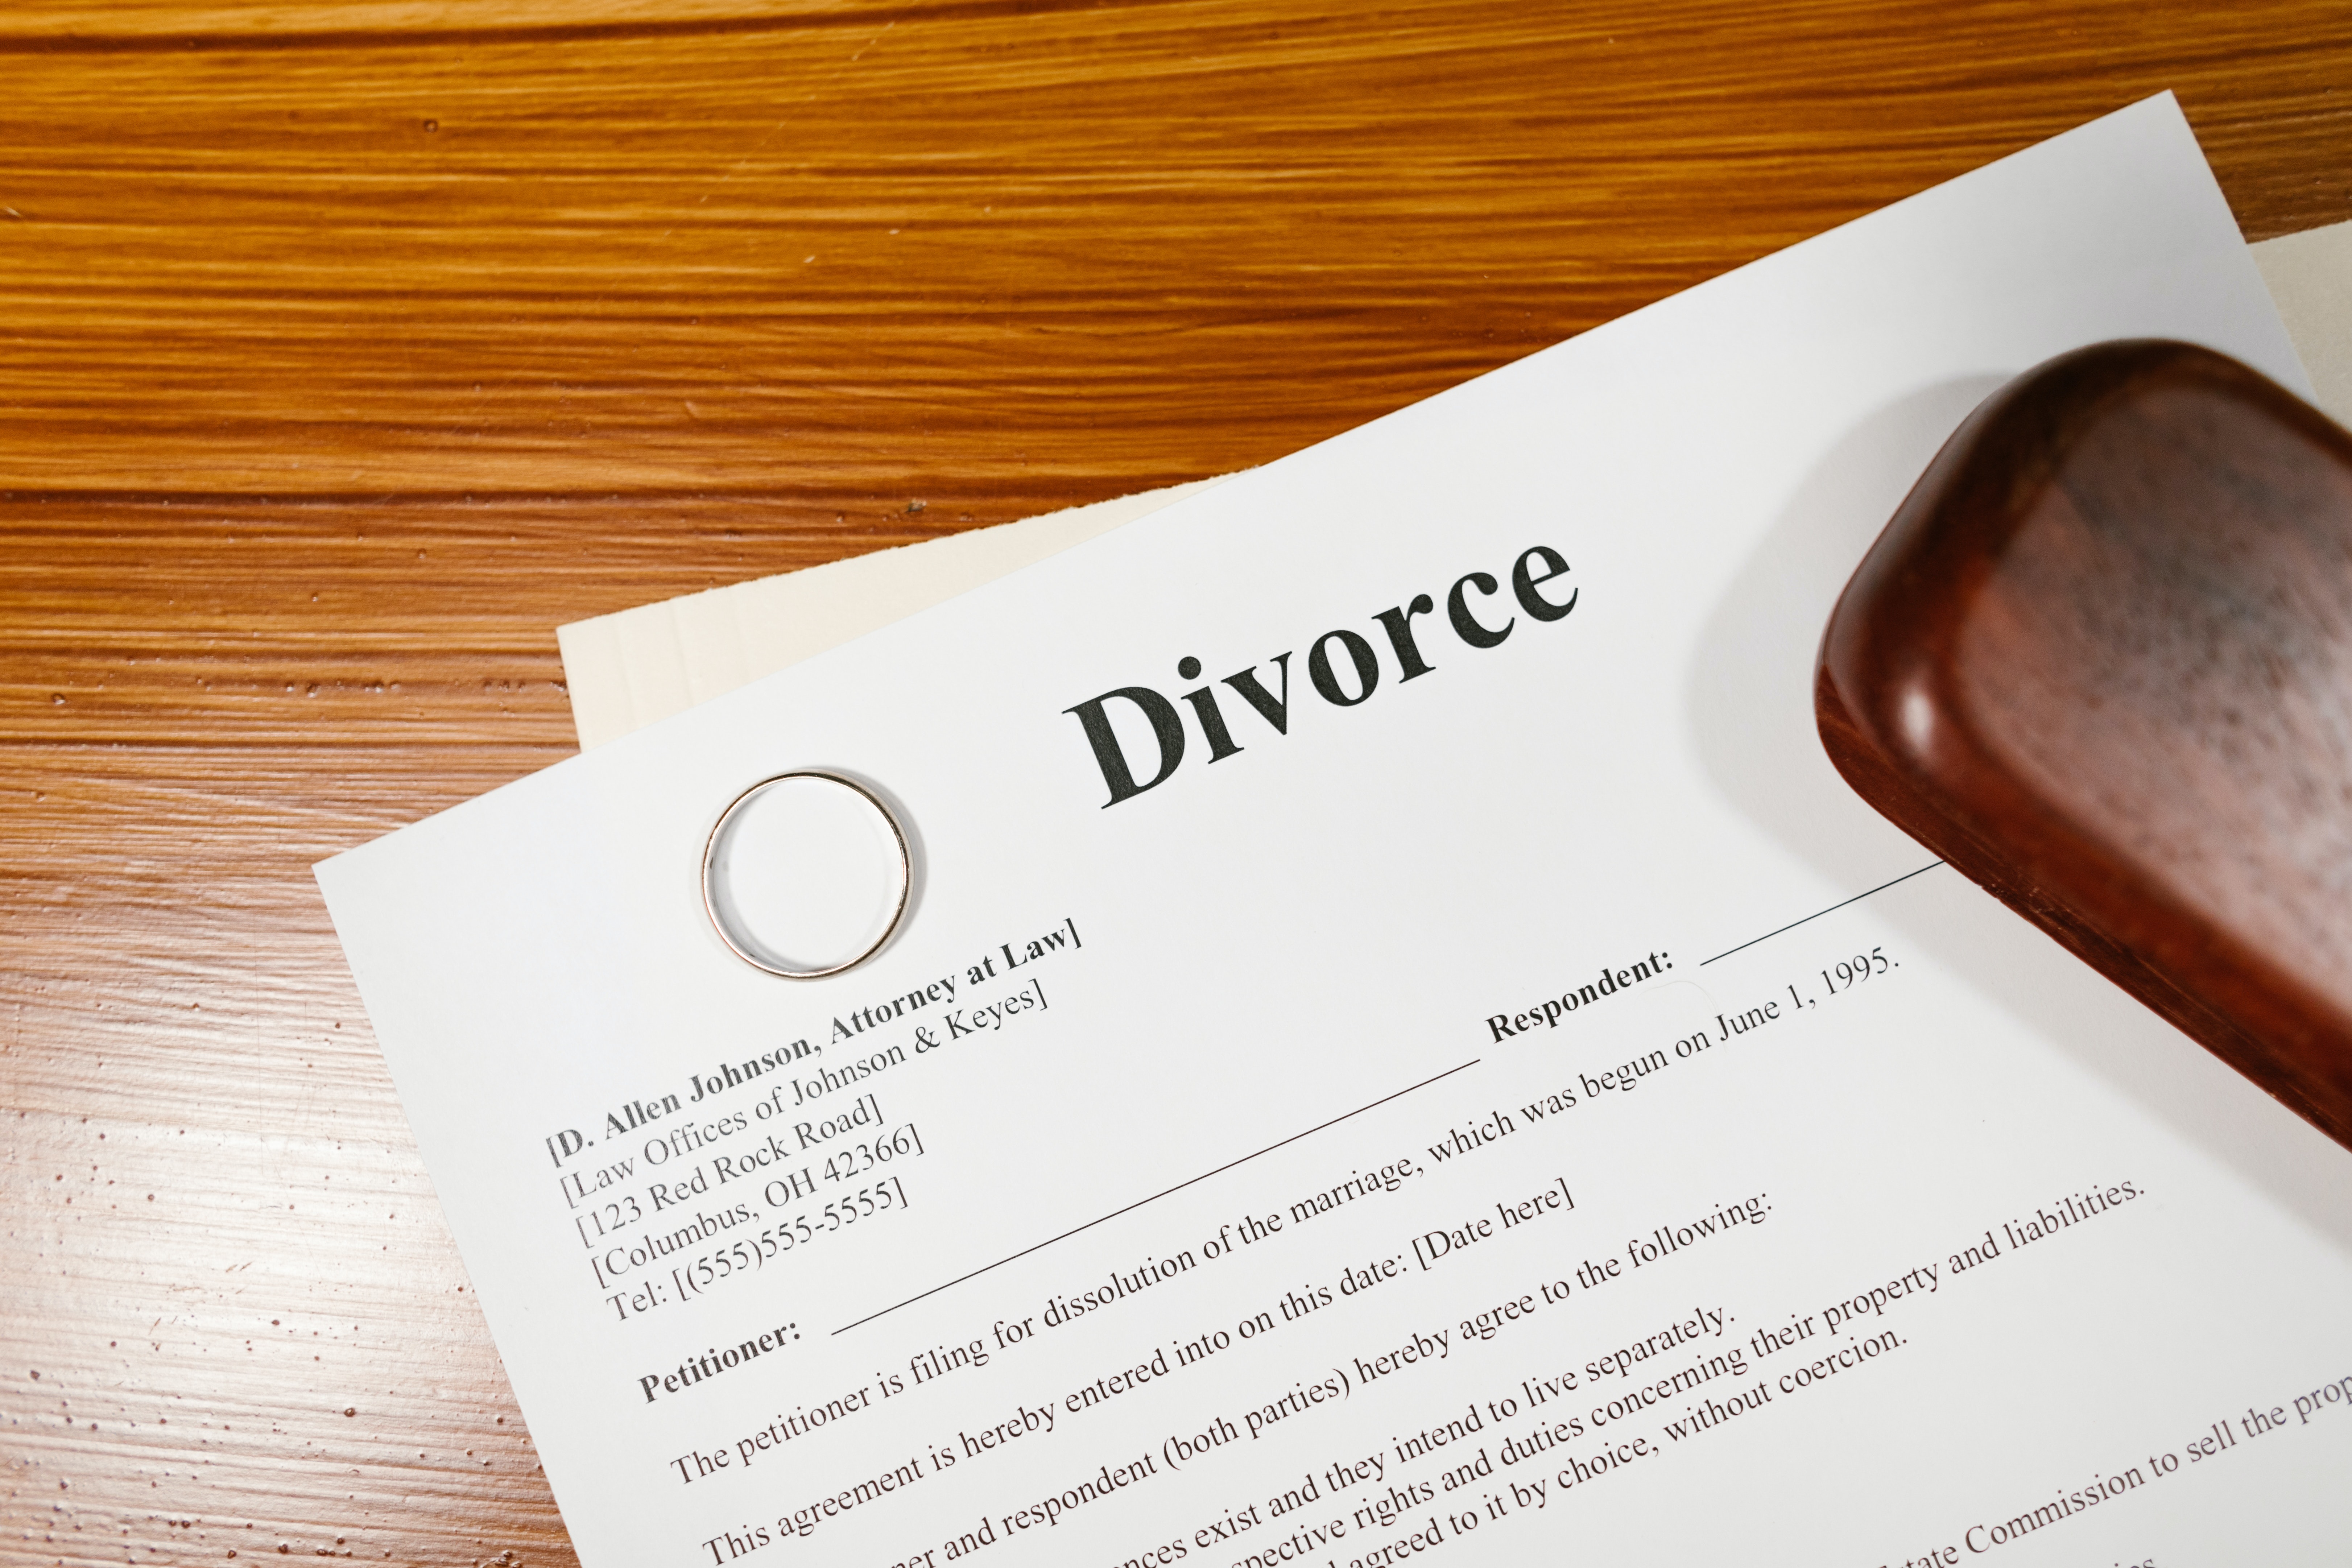 Appel d'un jugement de divorce : que devient la pension alimentaire au titre du devoir de secours ? 